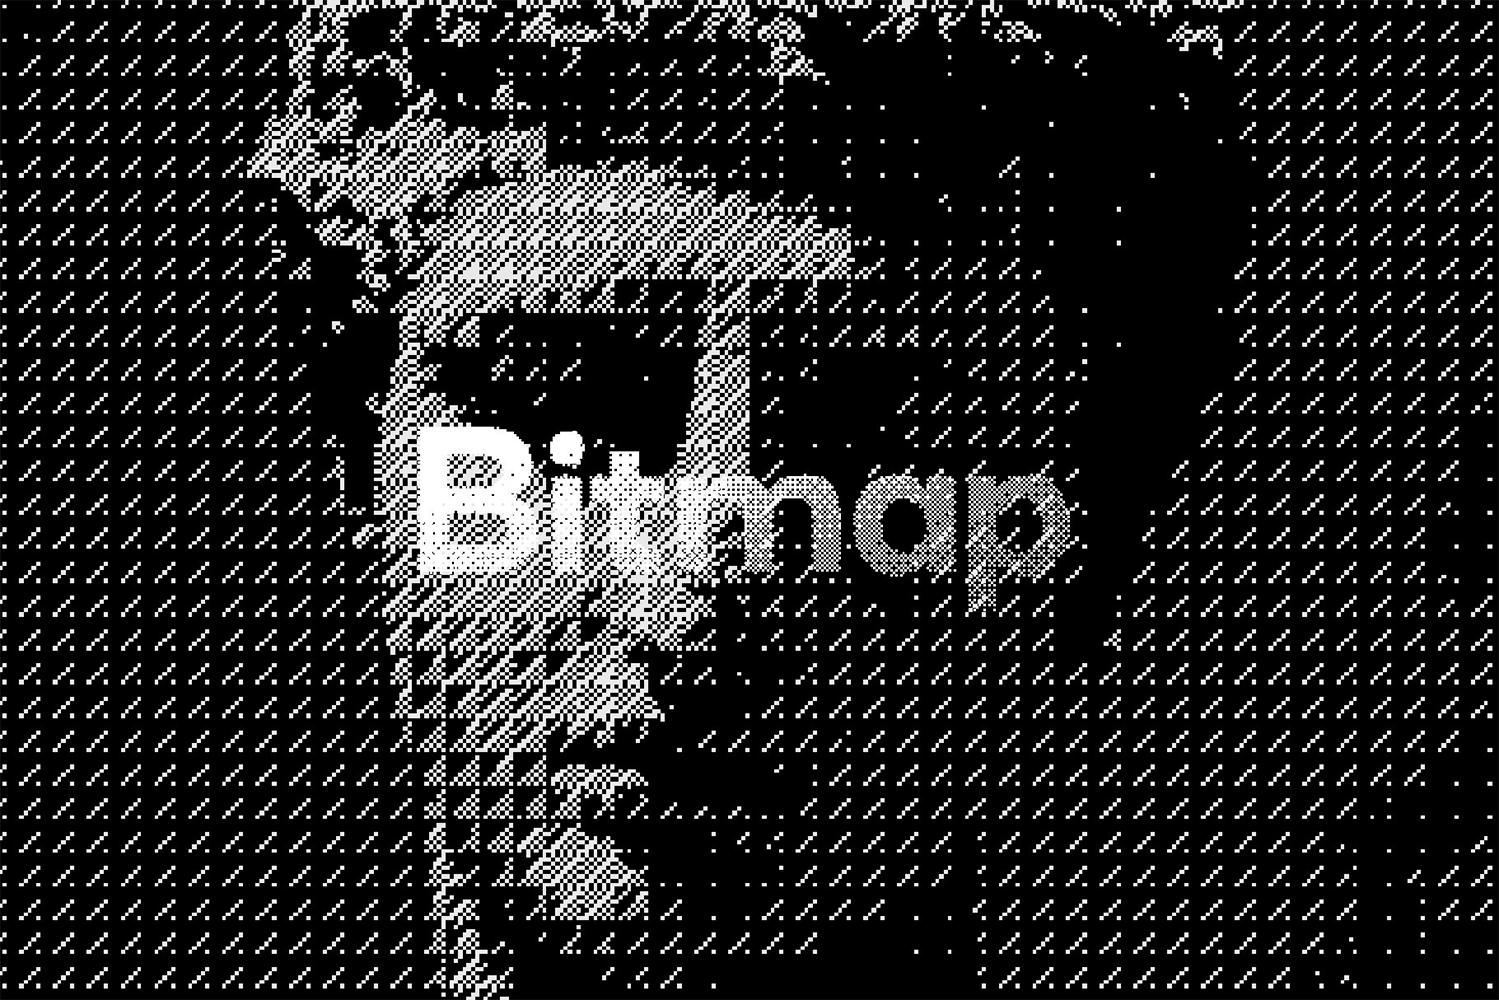 1096 复古8-Bit八位游戏图像像素画半调特效生成ps动作插件设计素材Bitmap-8-Bit-Effect-Actions